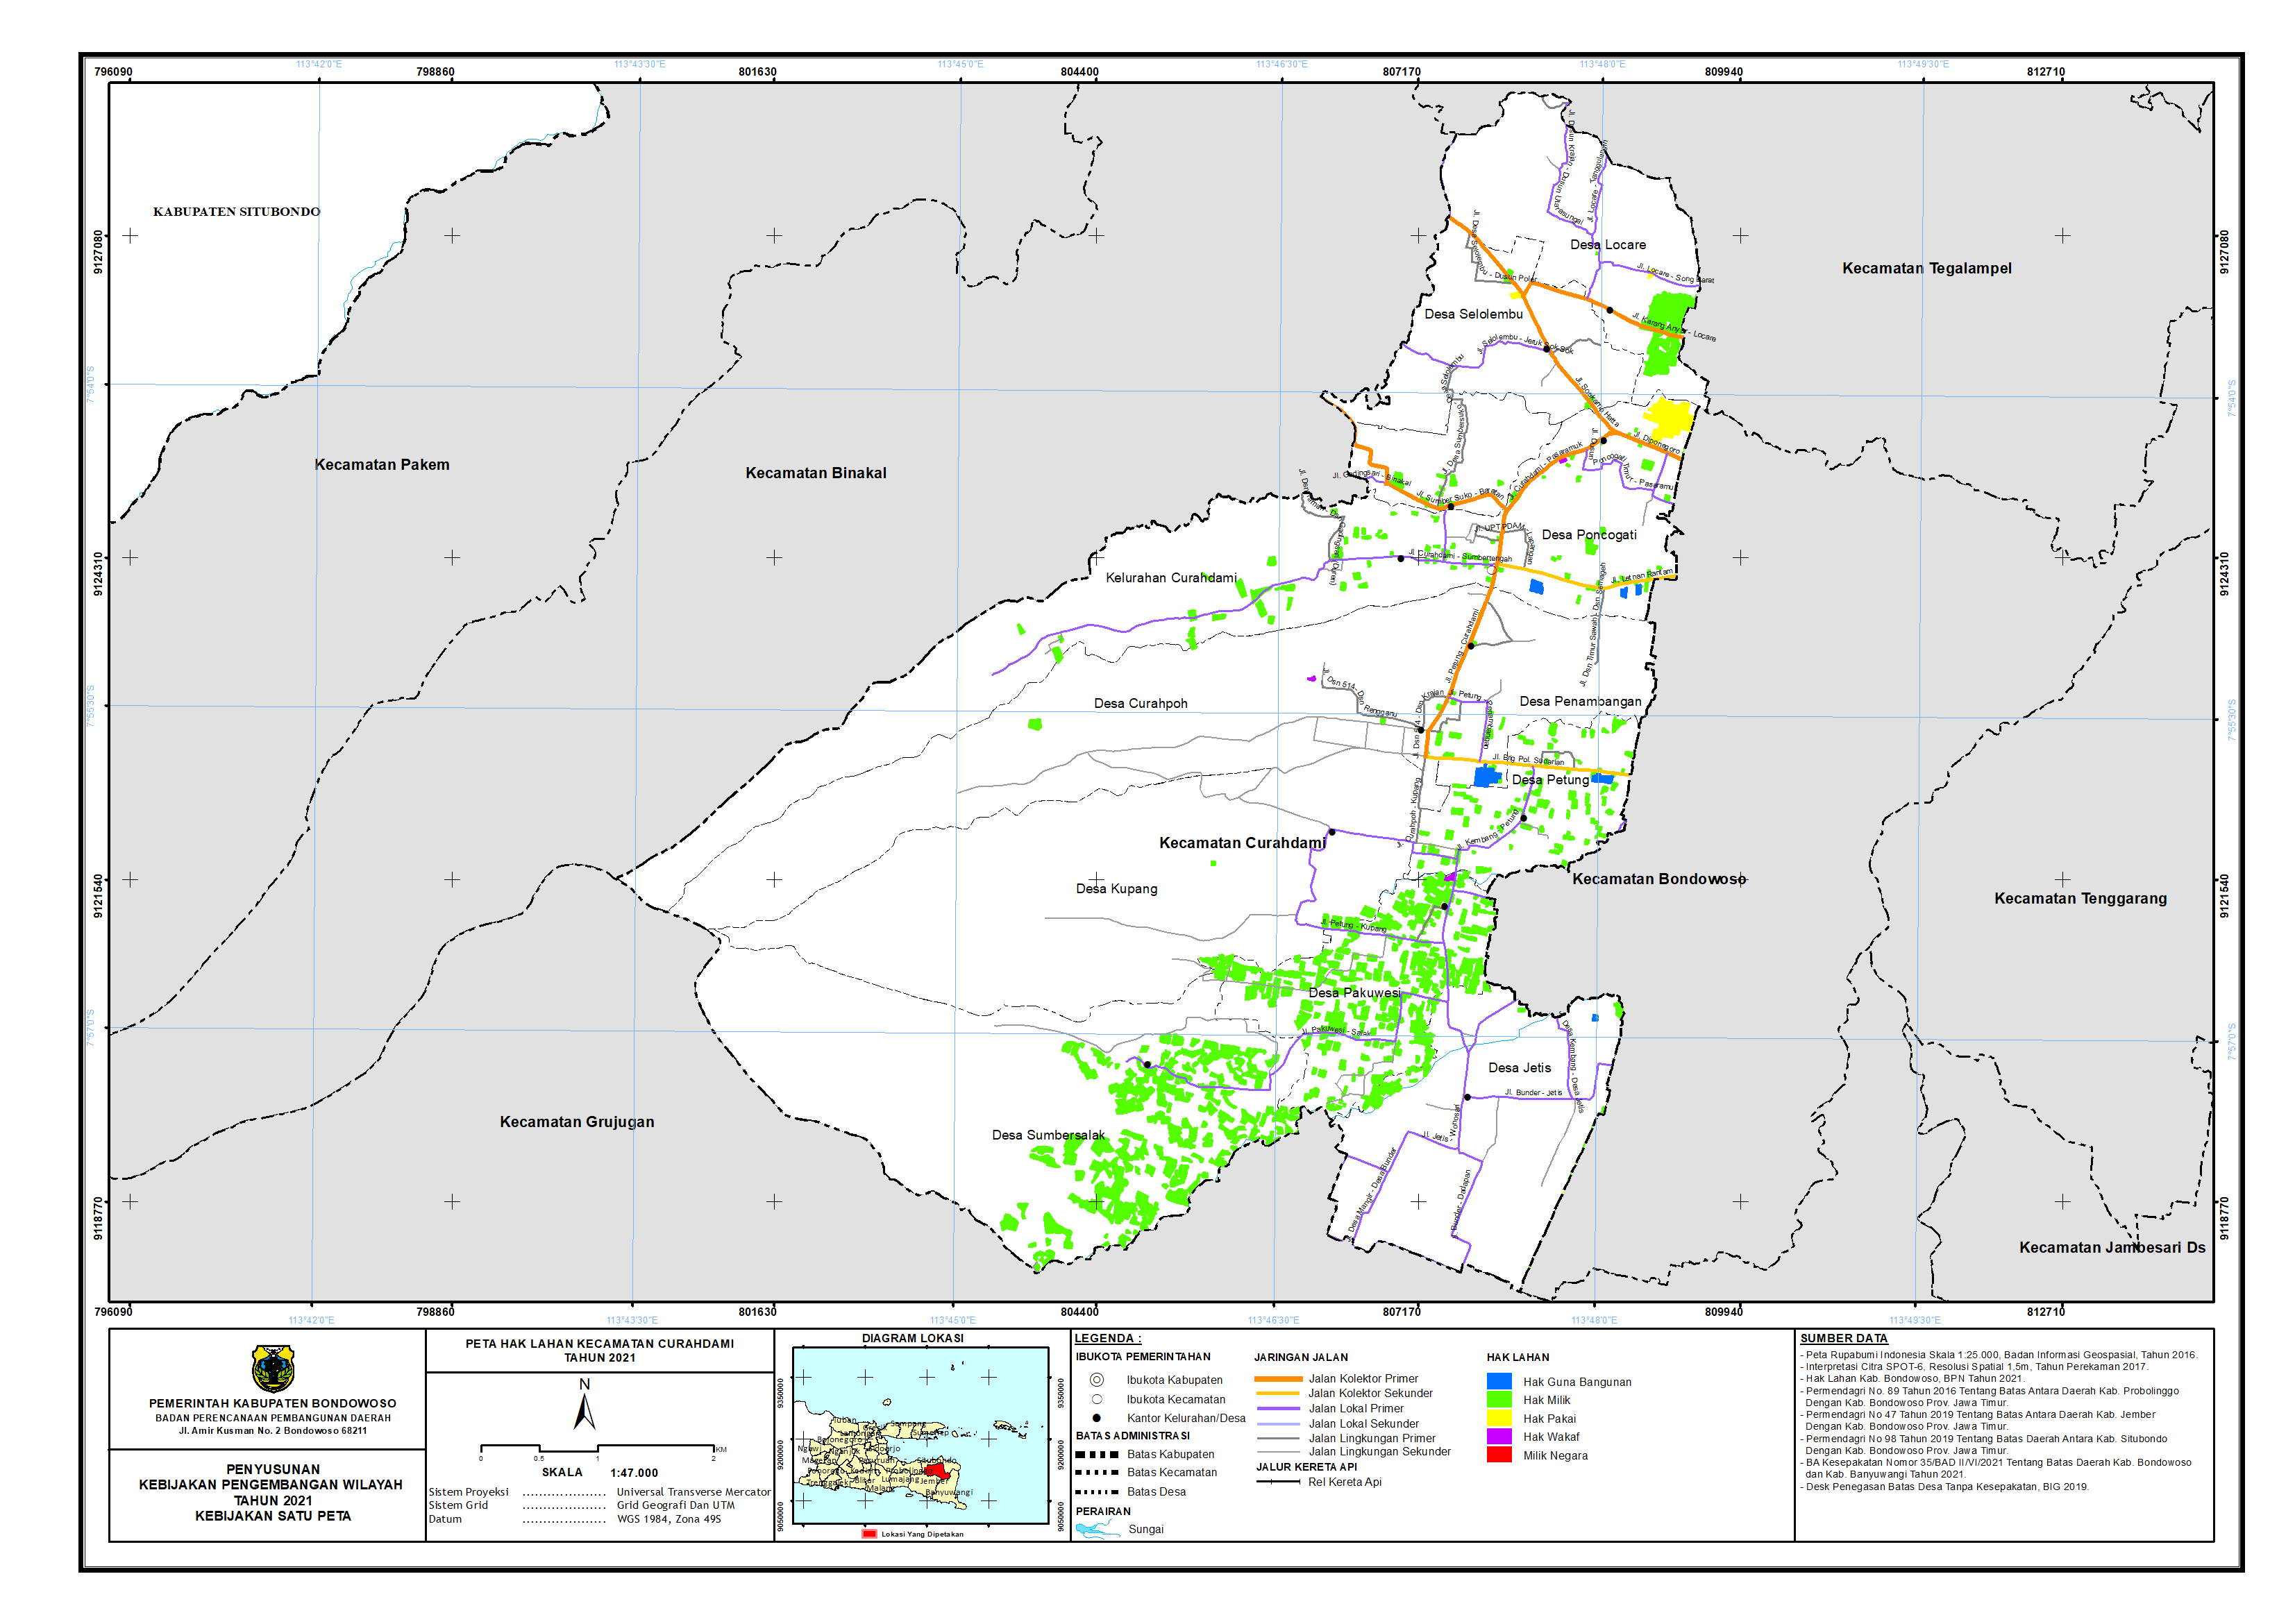 Peta Hak Lahan Kecamatan Curahdami.png